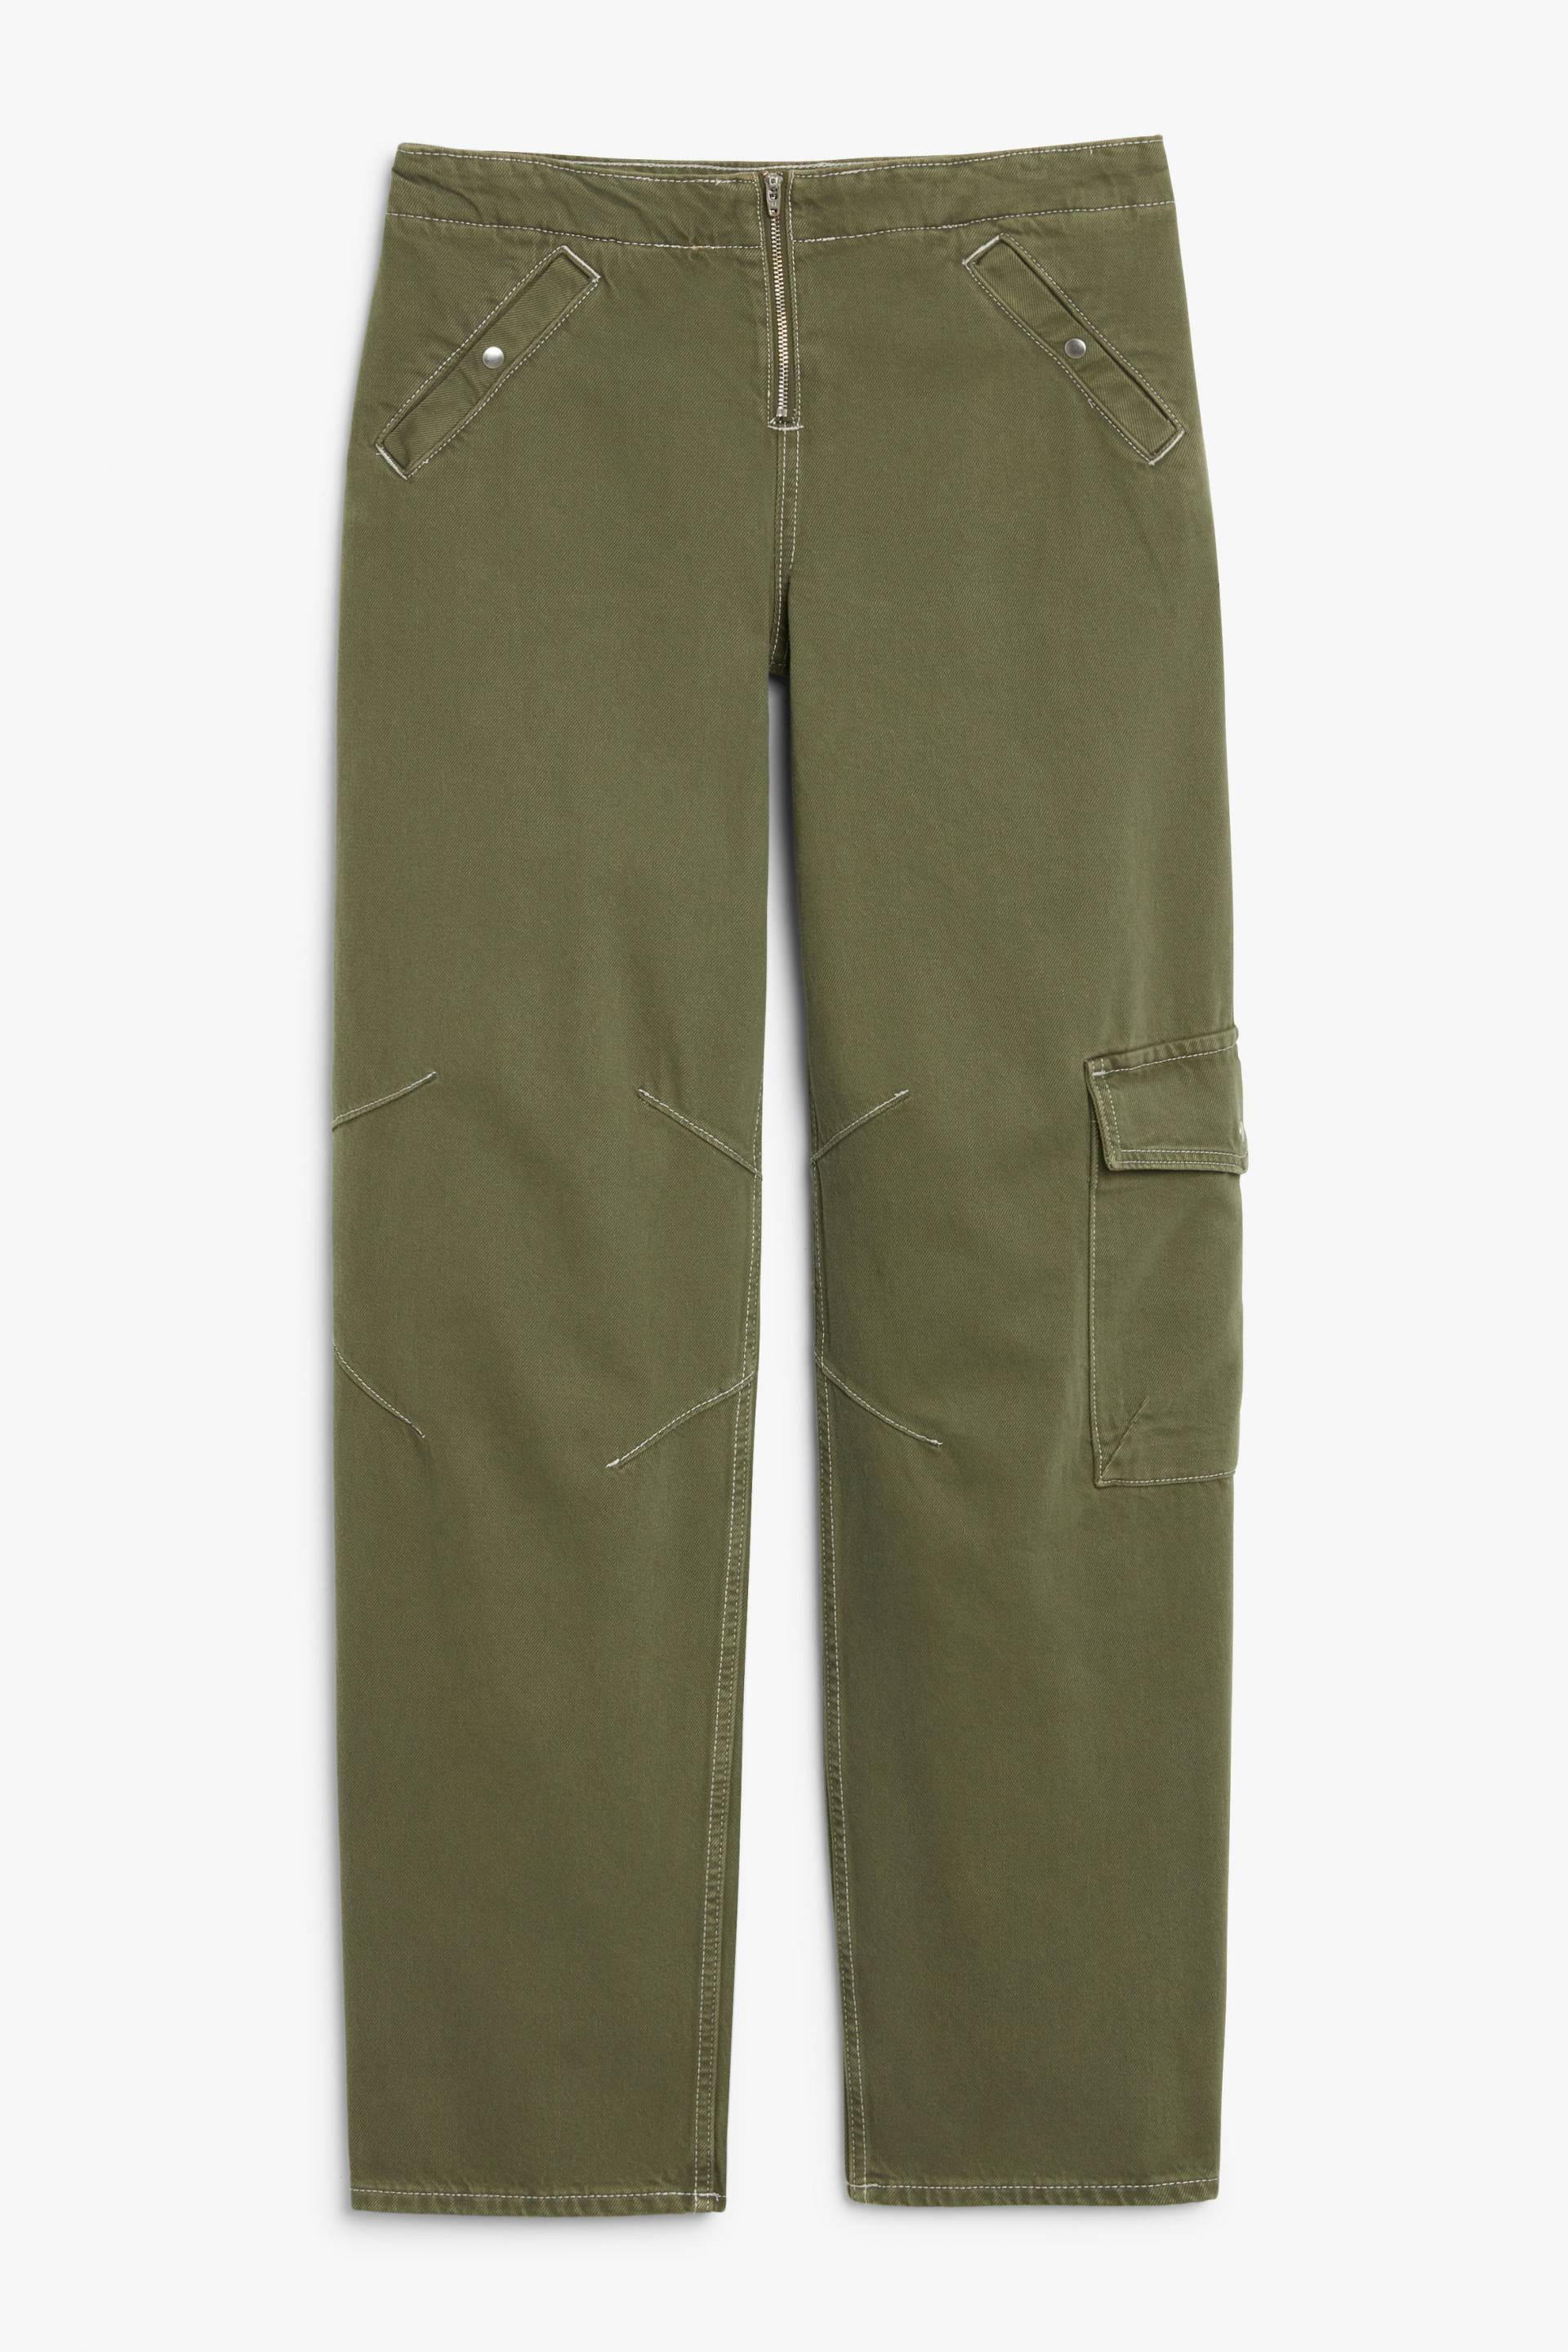 Monki Tief sitzende Cargo-Jeans Khakigrün, Baggy in Größe W 36. Farbe: Khaki green von Monki